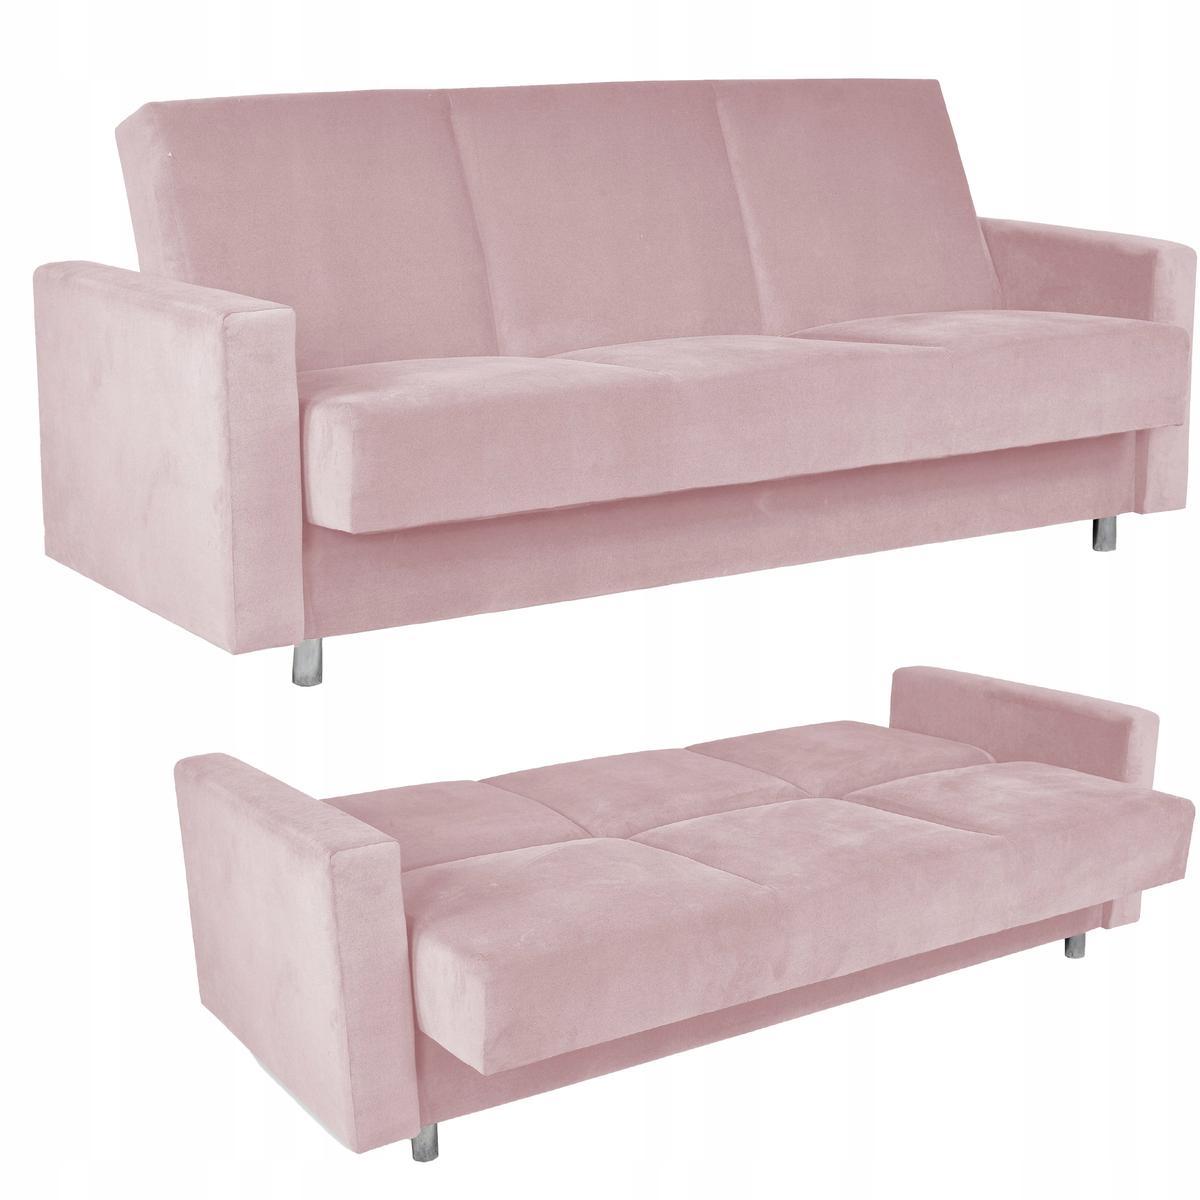 Wersalka ALICJA 212x100 cm różowa rozkładana kanapa z pojemnikiem tapczan do salonu Trinity nr. 1